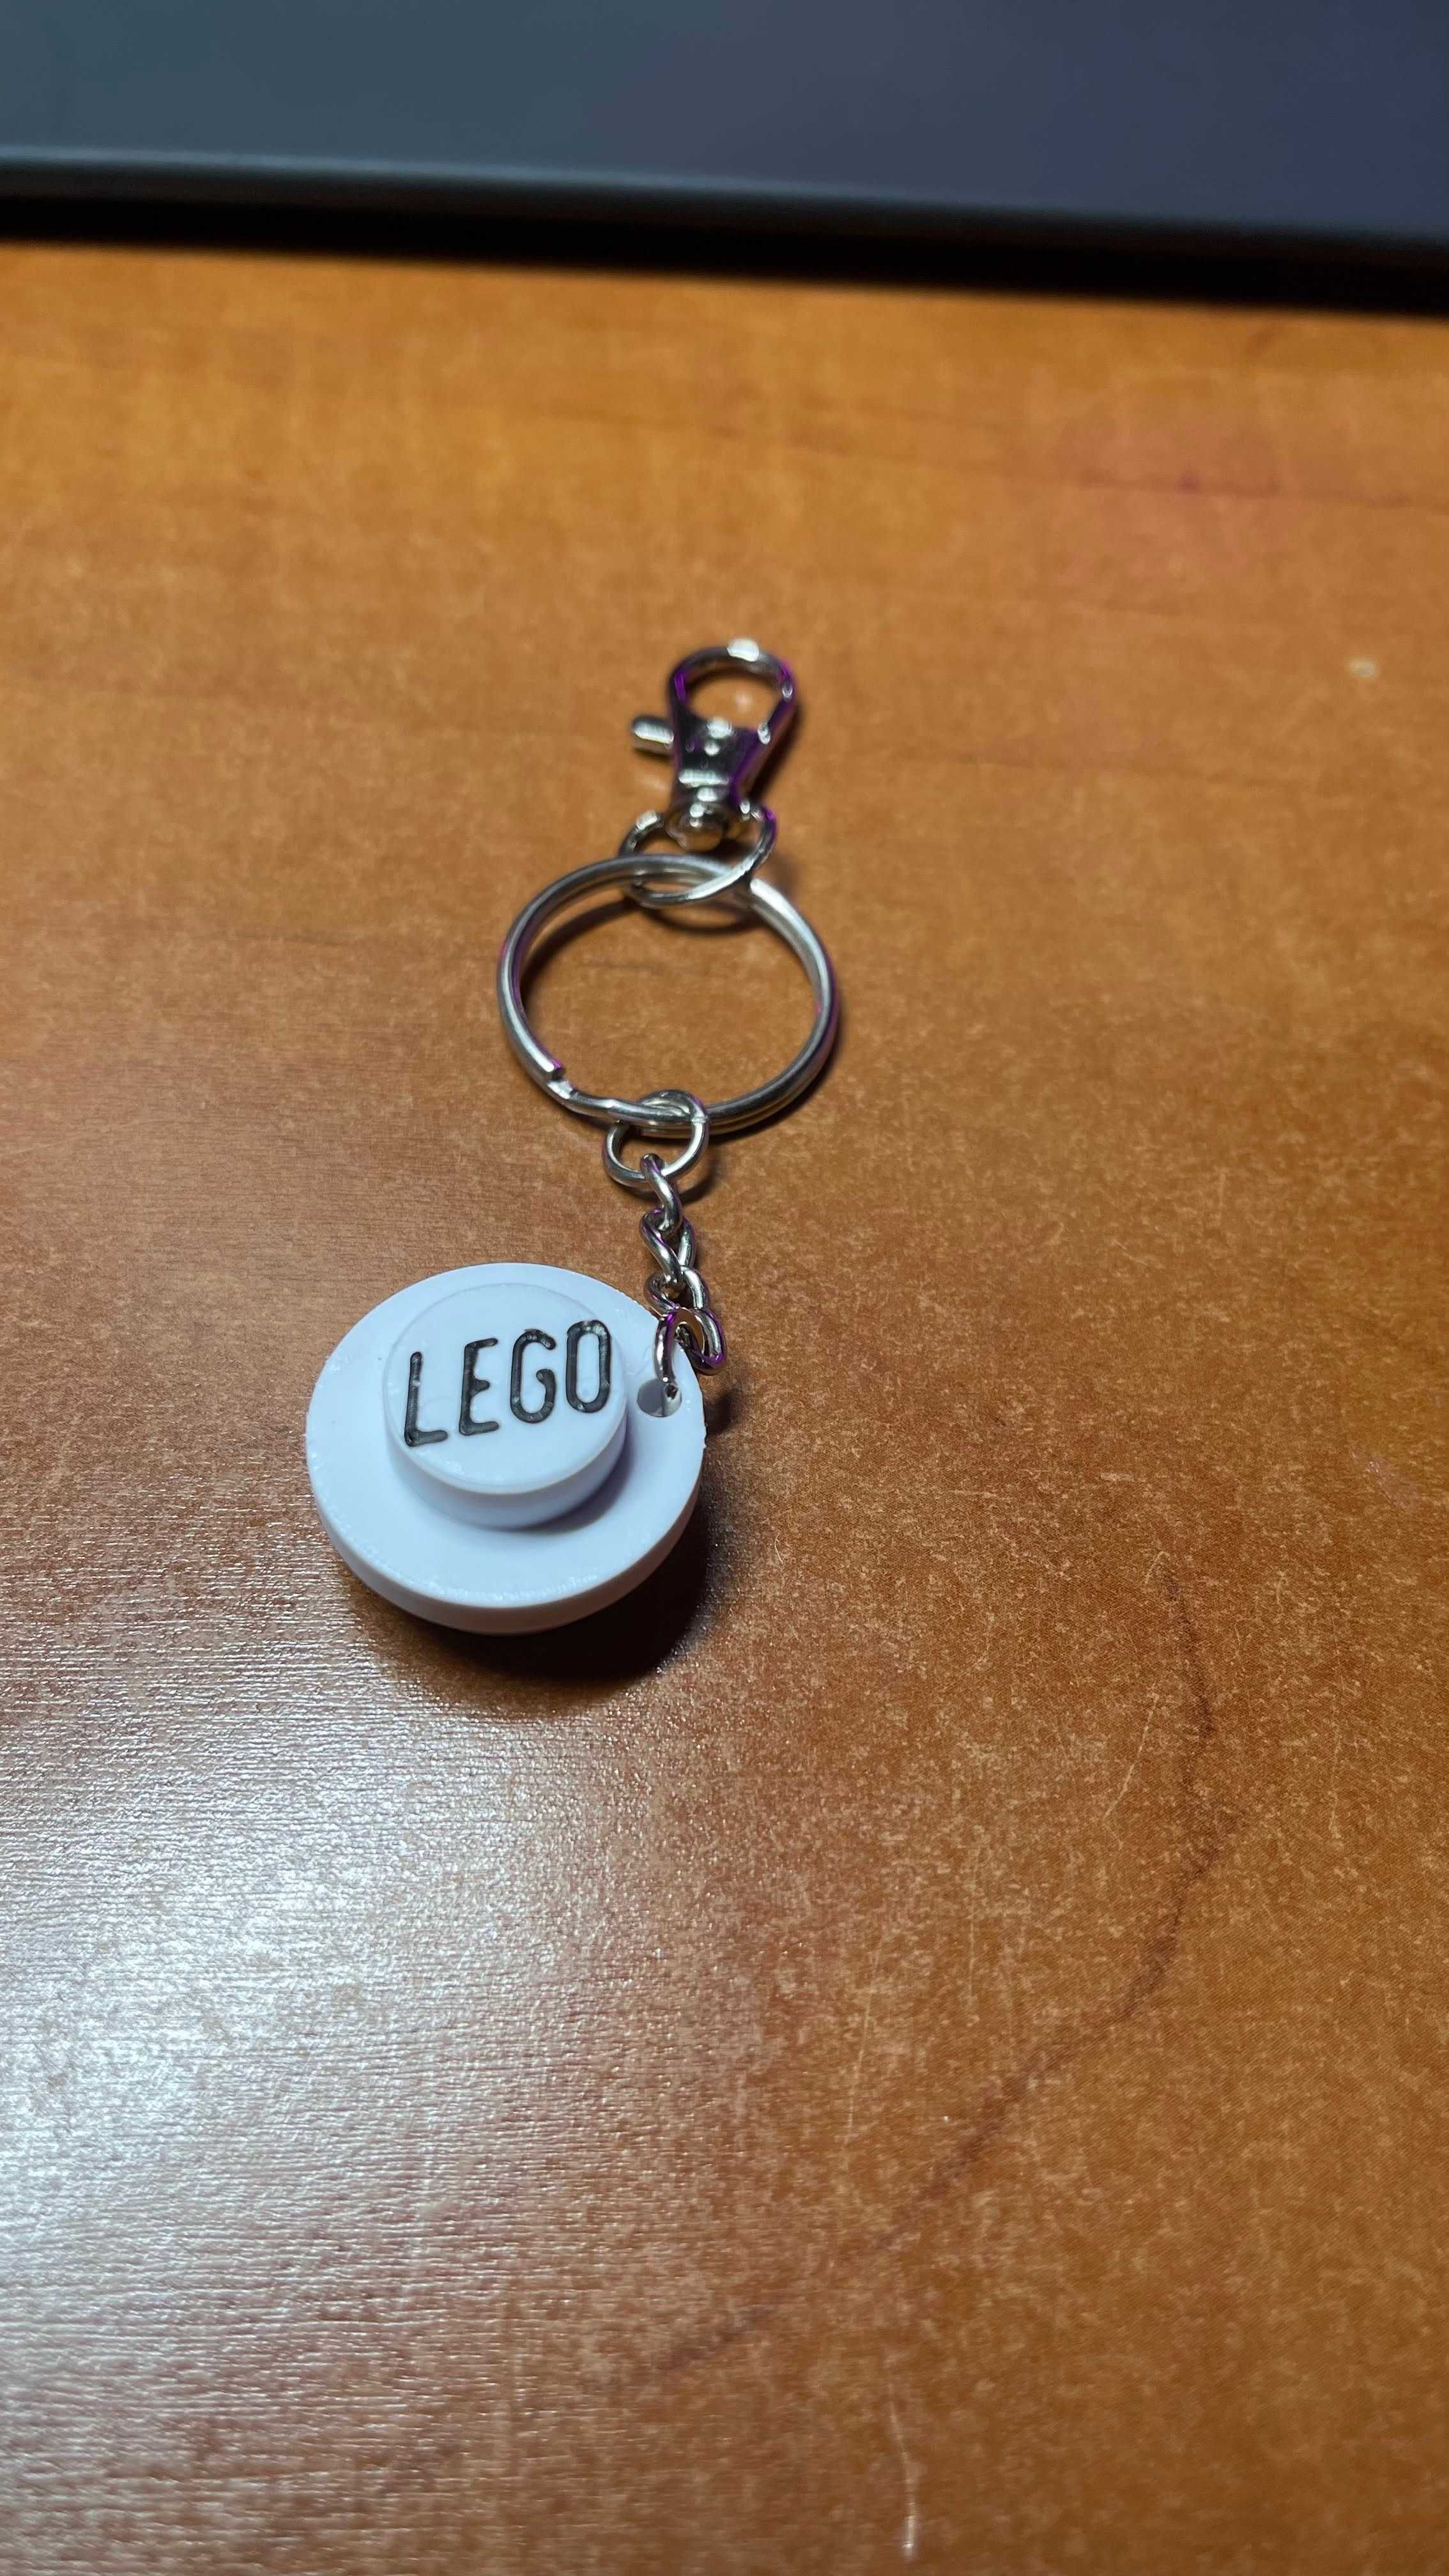 Wyjątkowy brelok Lego — prezent dla fana klocków!